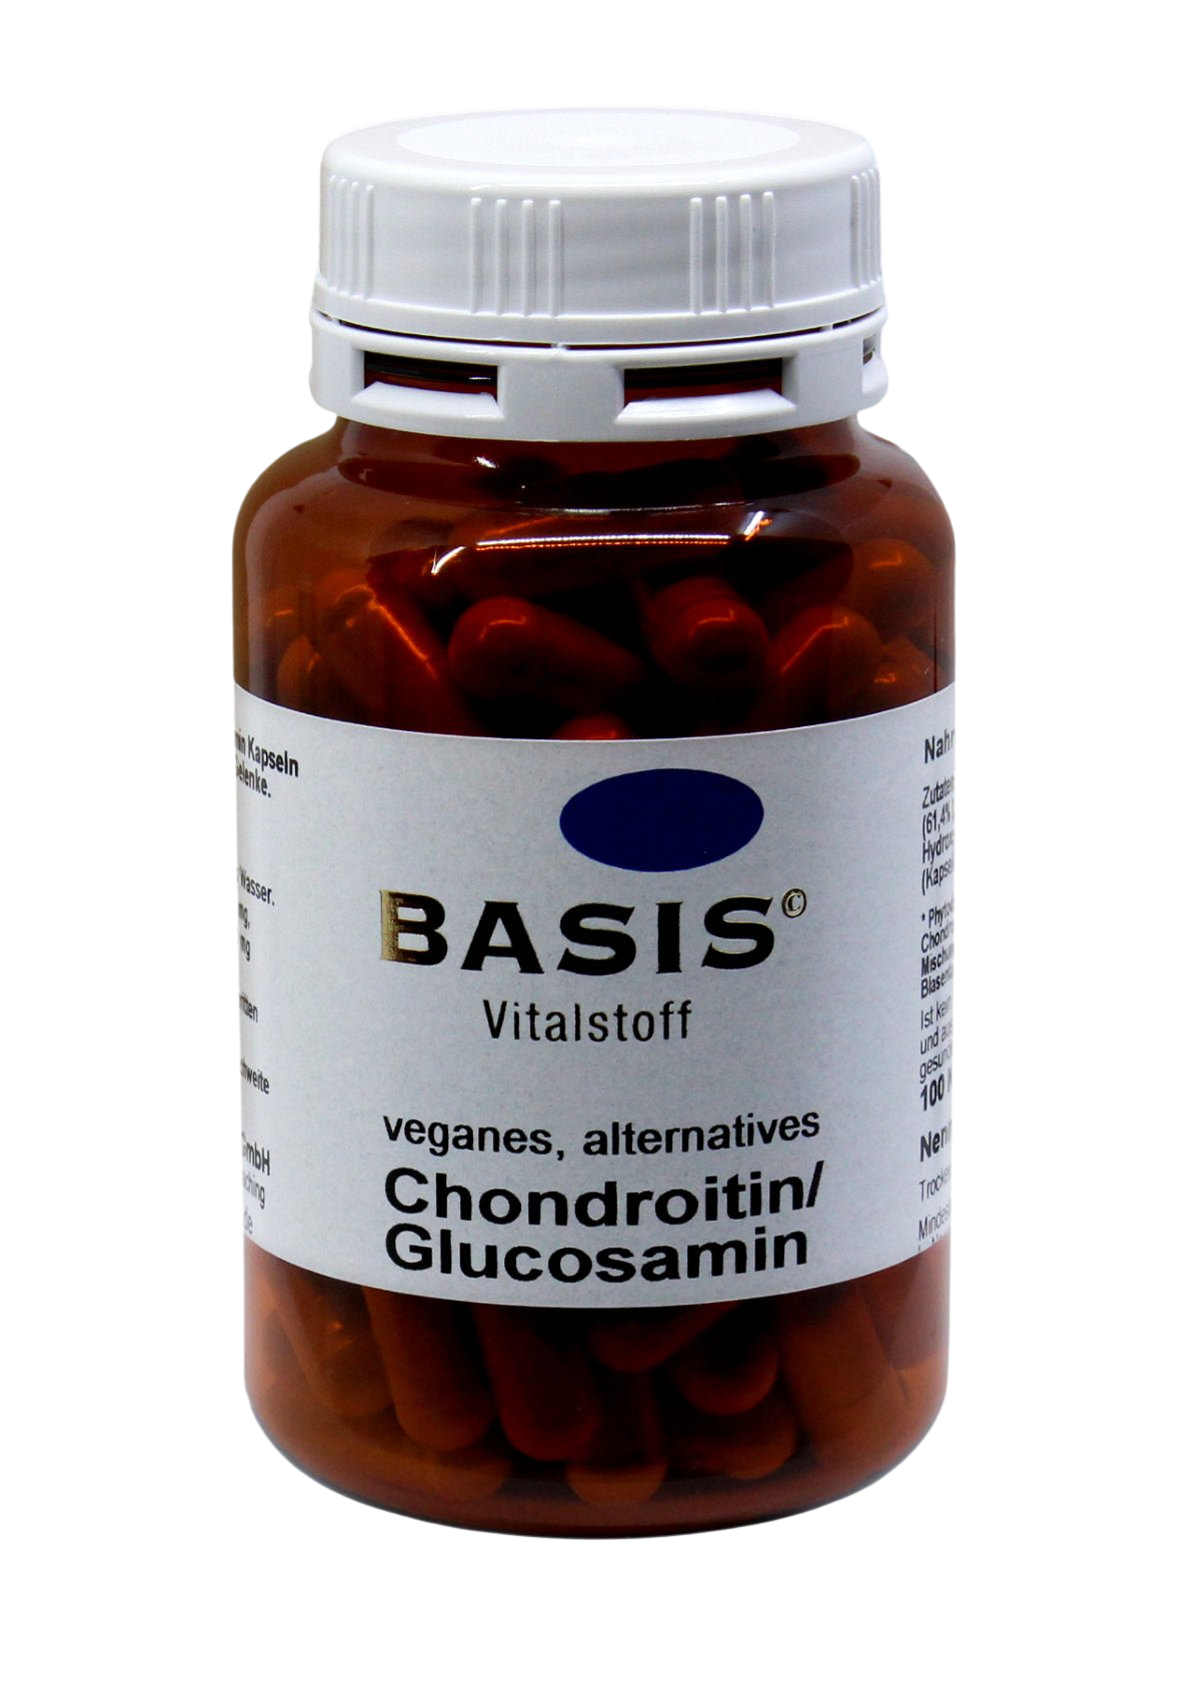 Chondroitin & Glucosamin